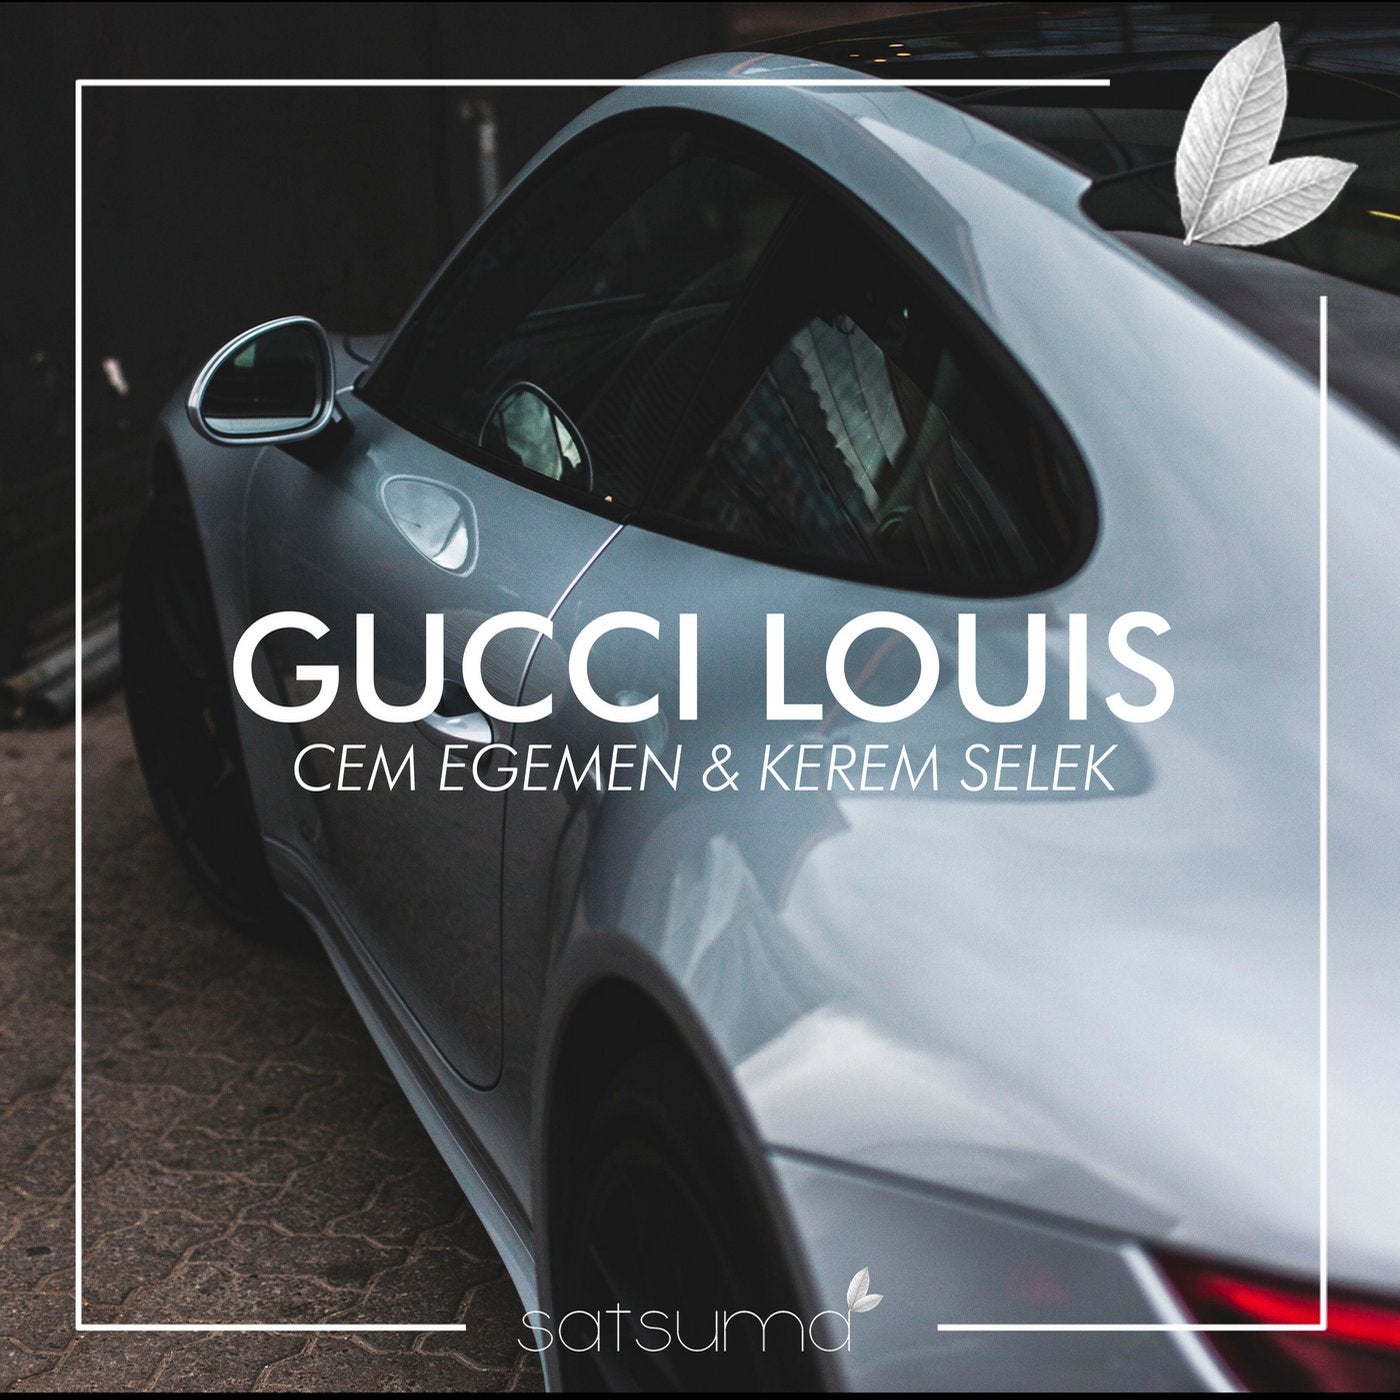 Gucci Louis